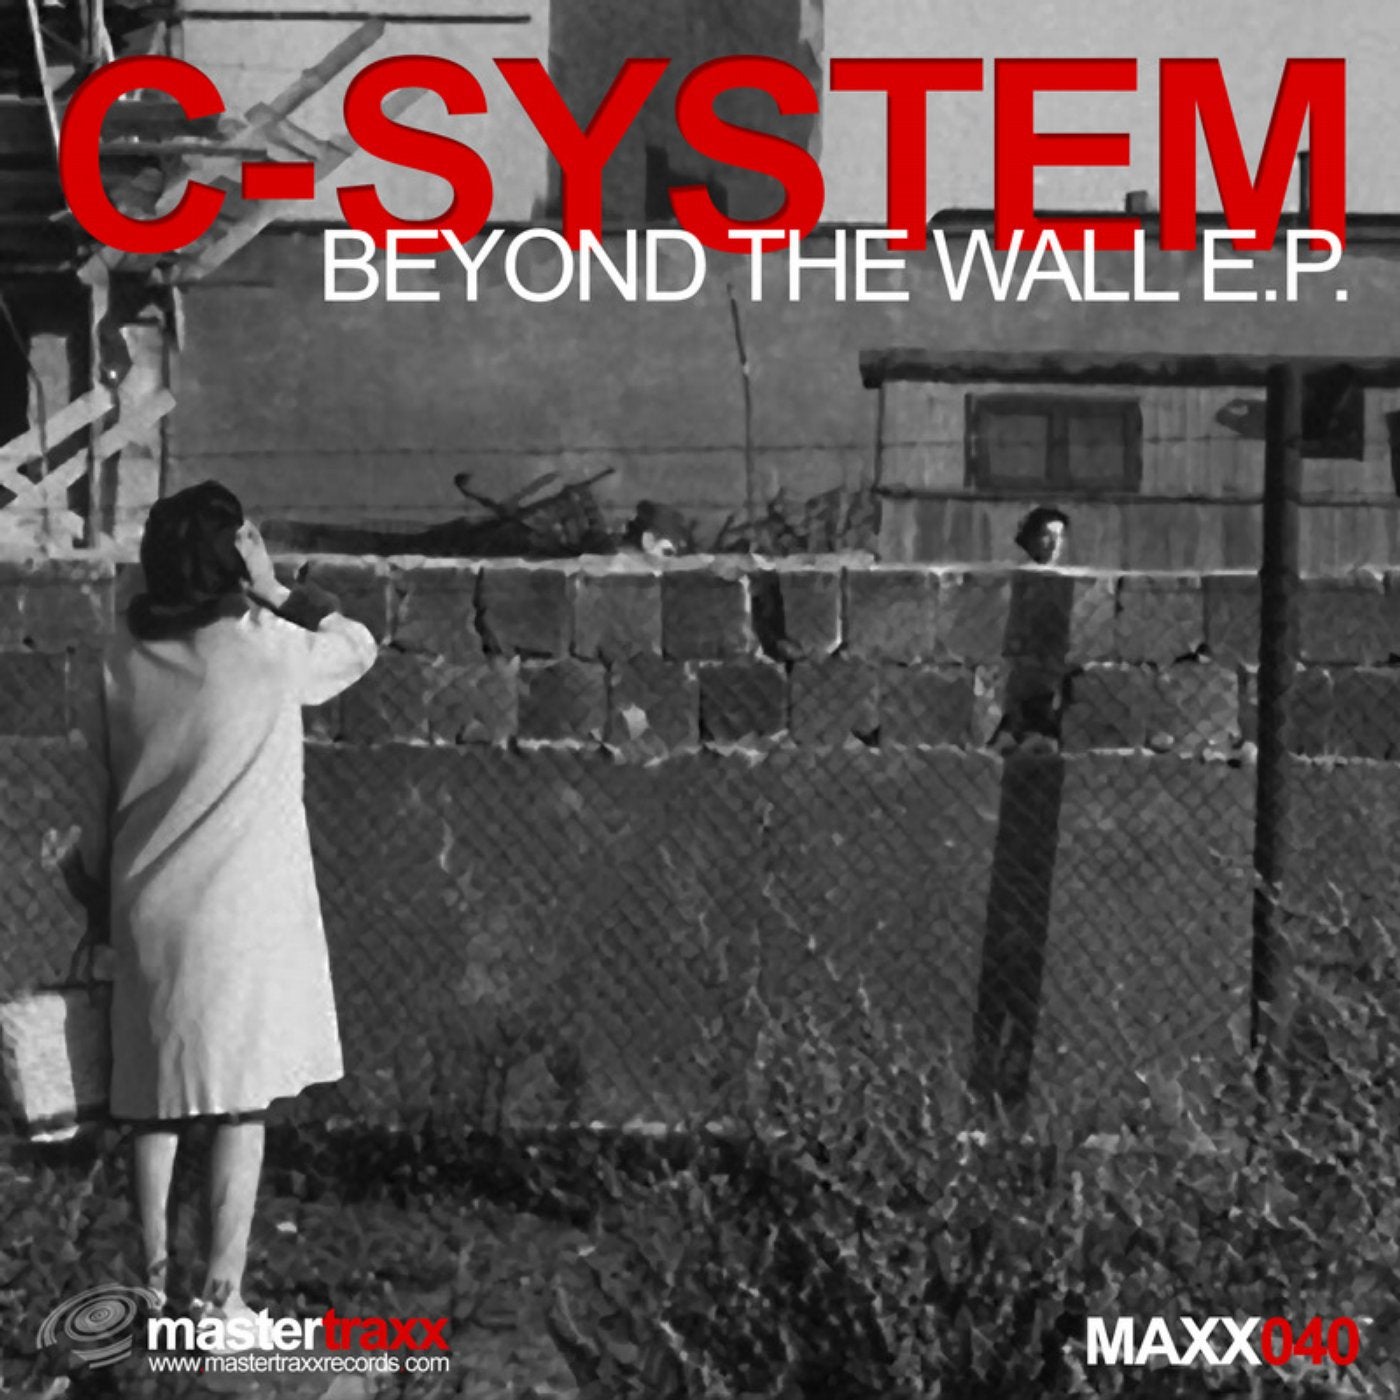 Beyond The Wall EP